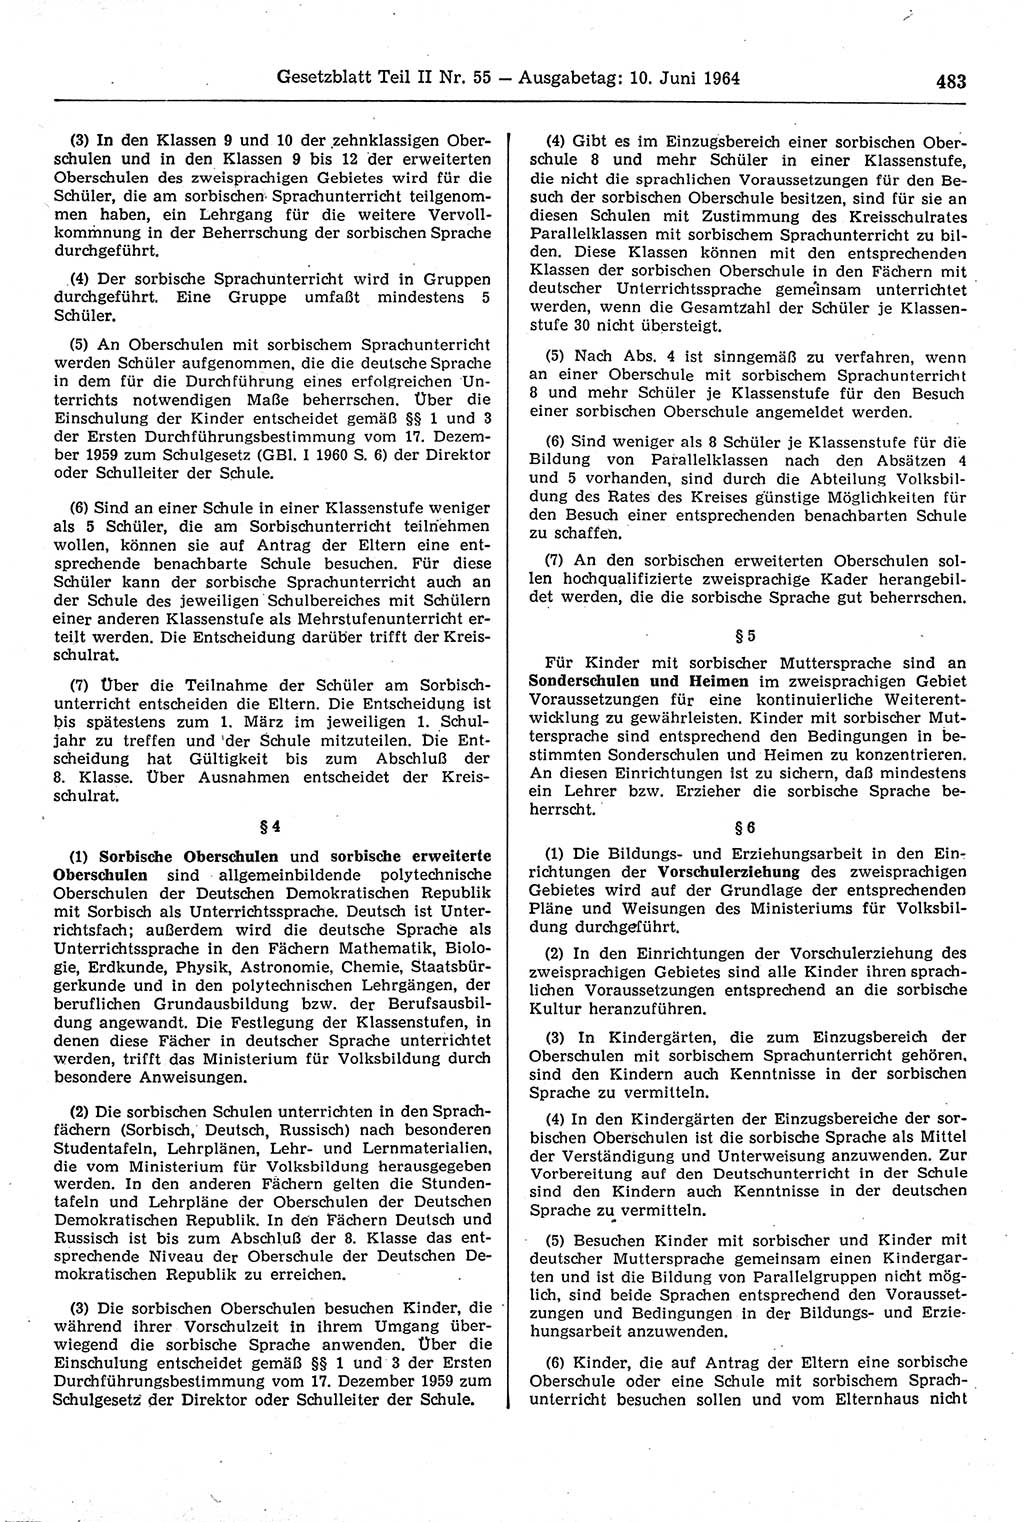 Gesetzblatt (GBl.) der Deutschen Demokratischen Republik (DDR) Teil ⅠⅠ 1964, Seite 483 (GBl. DDR ⅠⅠ 1964, S. 483)